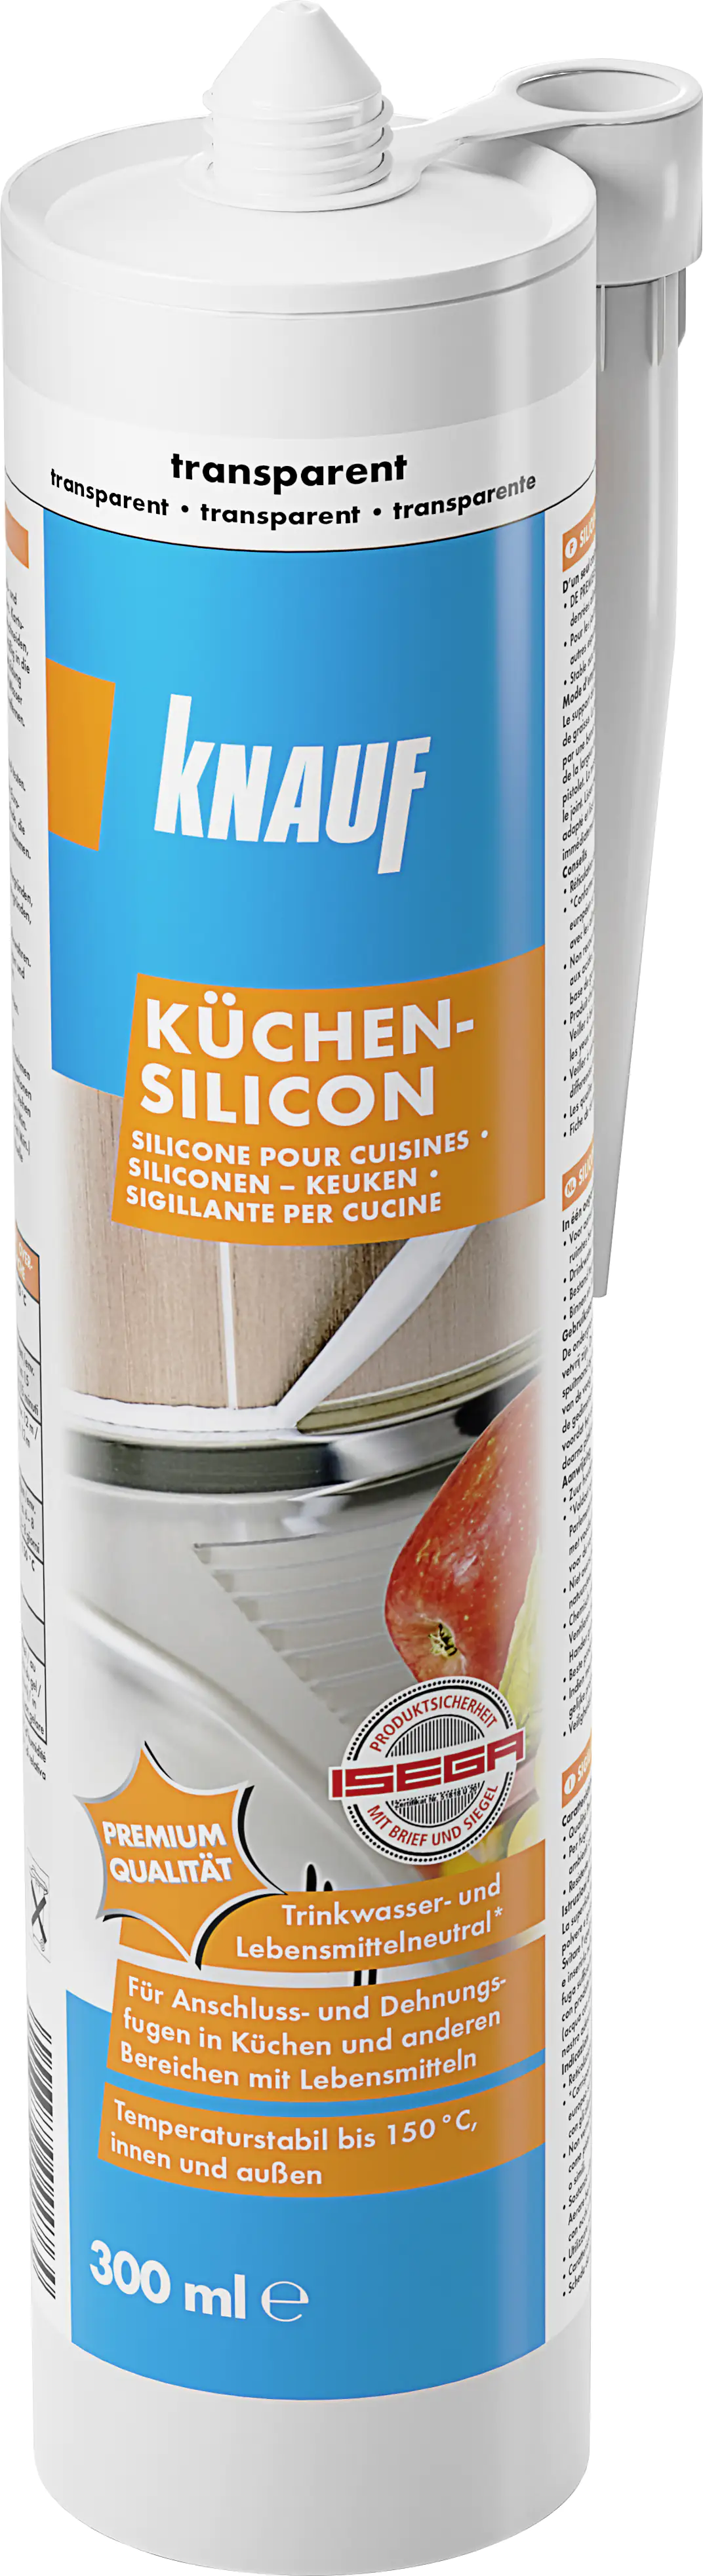 Knauf Küchen Silikon transparent 300 ml kaufen